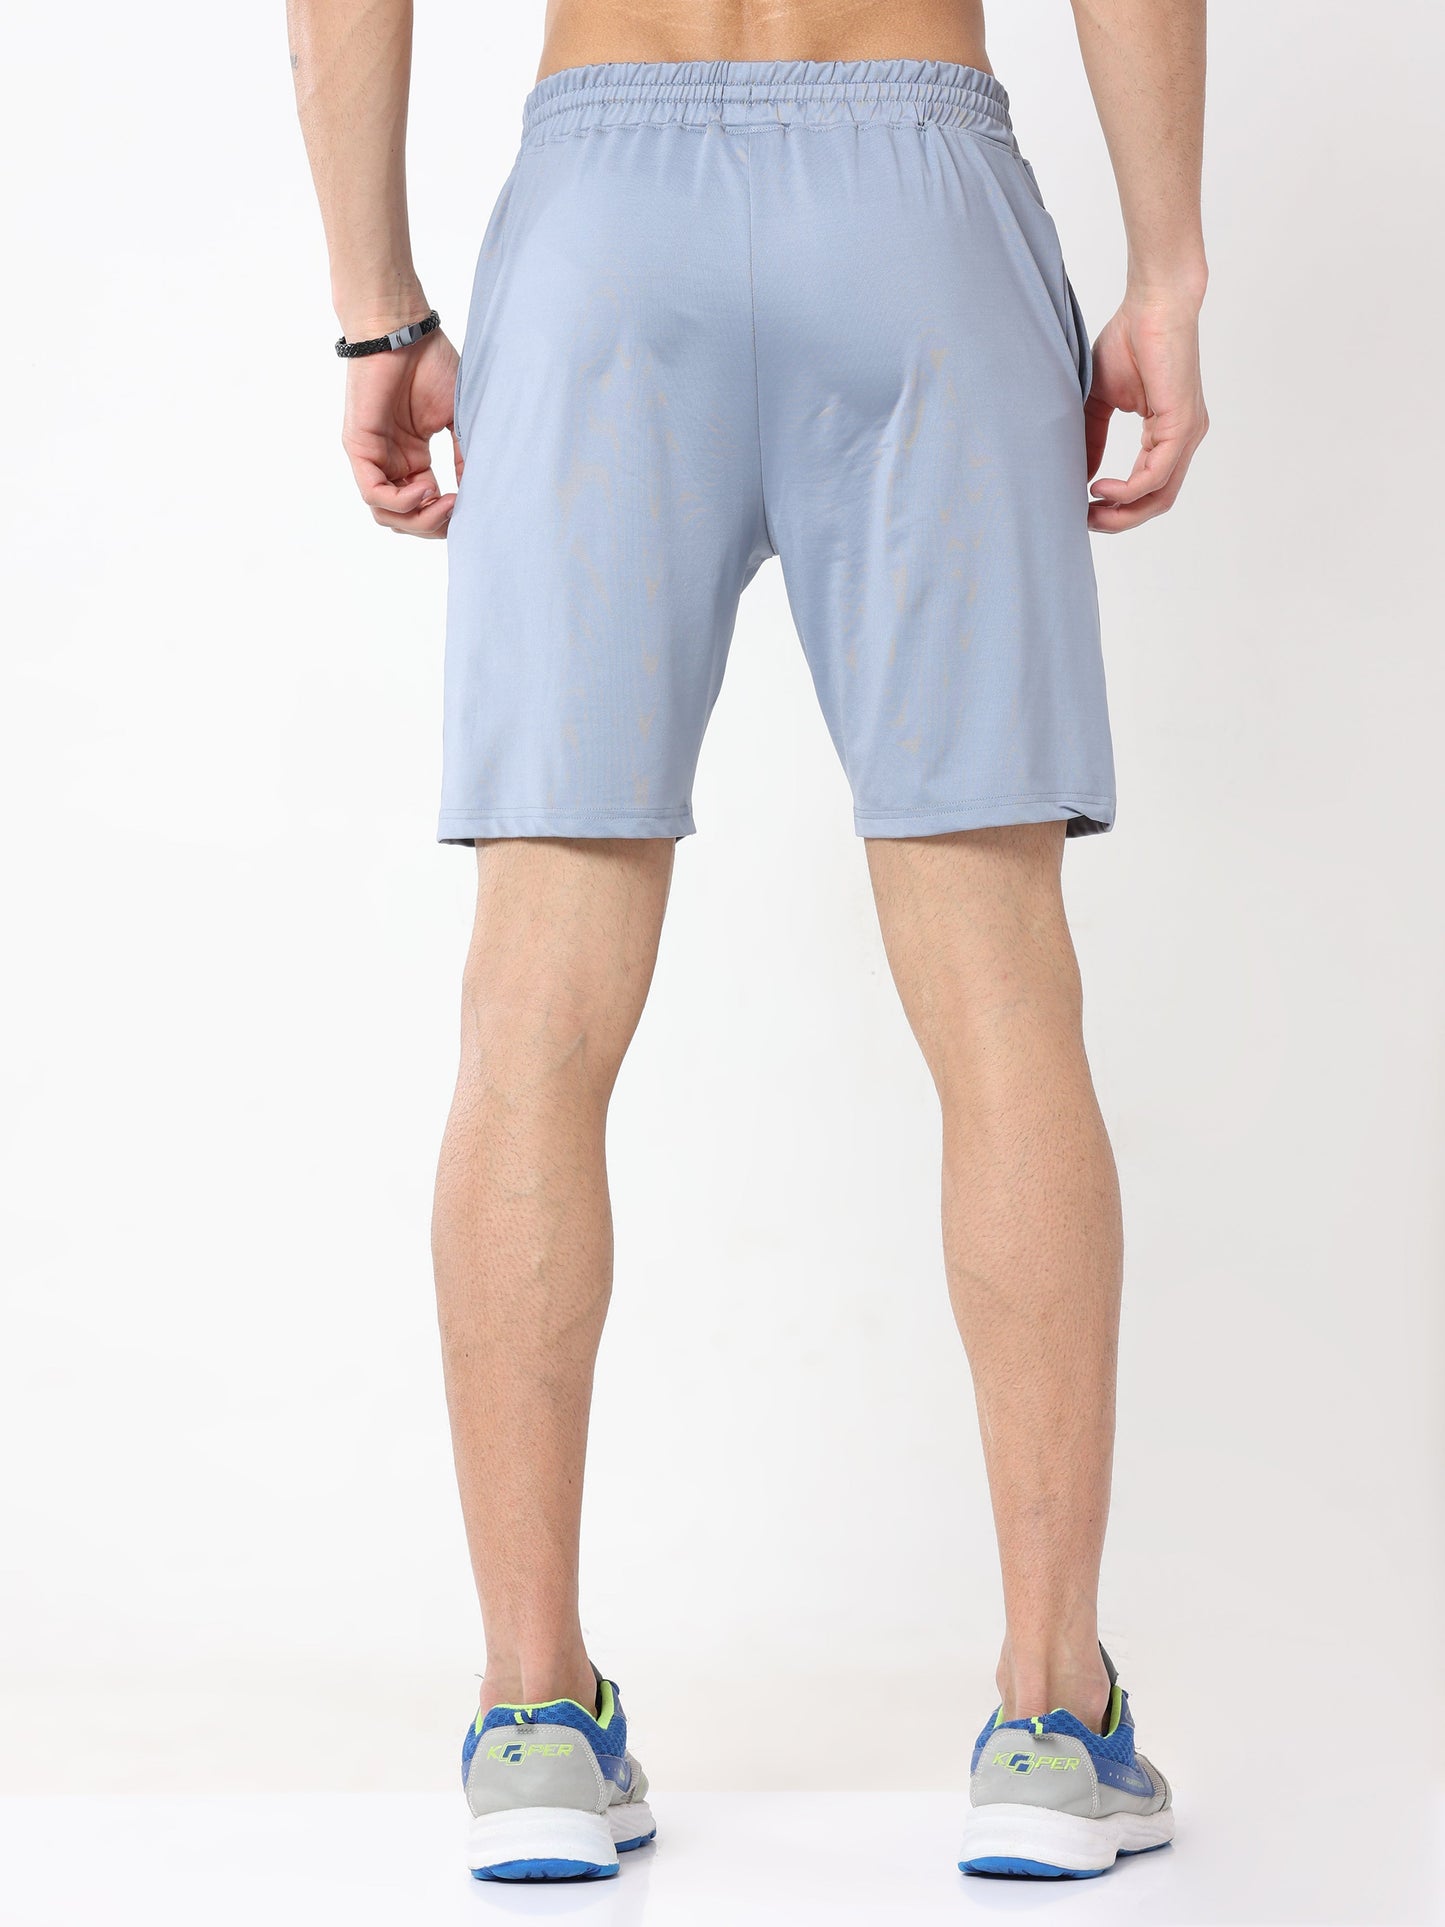 Athleisure Active Men's Shorts - Pale Blue